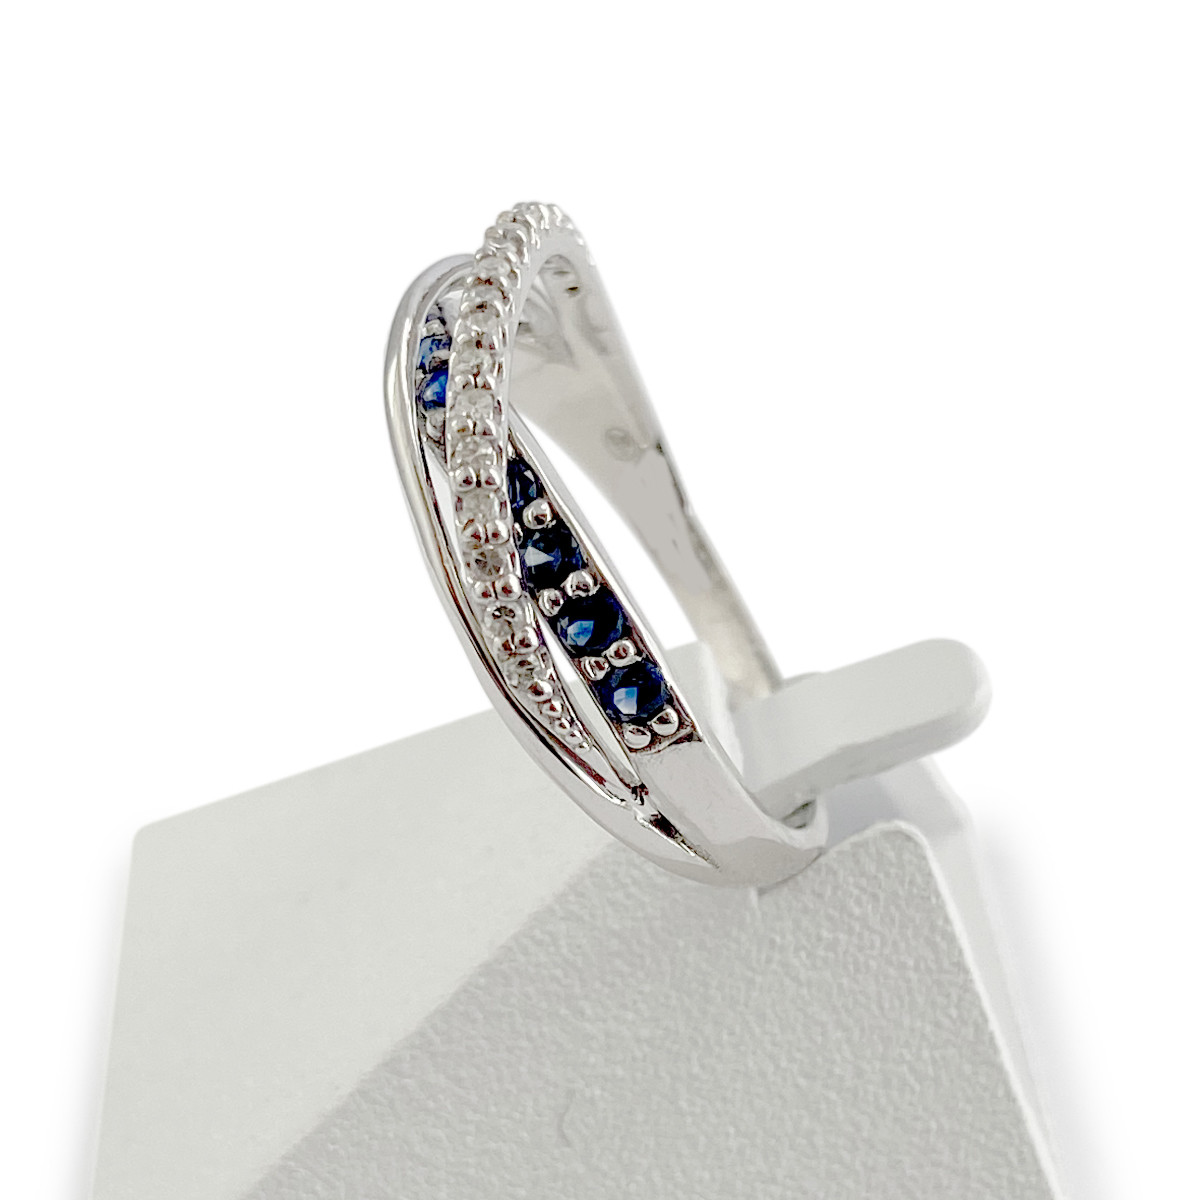 Bague d'occasion or 750 blanc anneaux entrelacés saphirs et diamants - vue 2